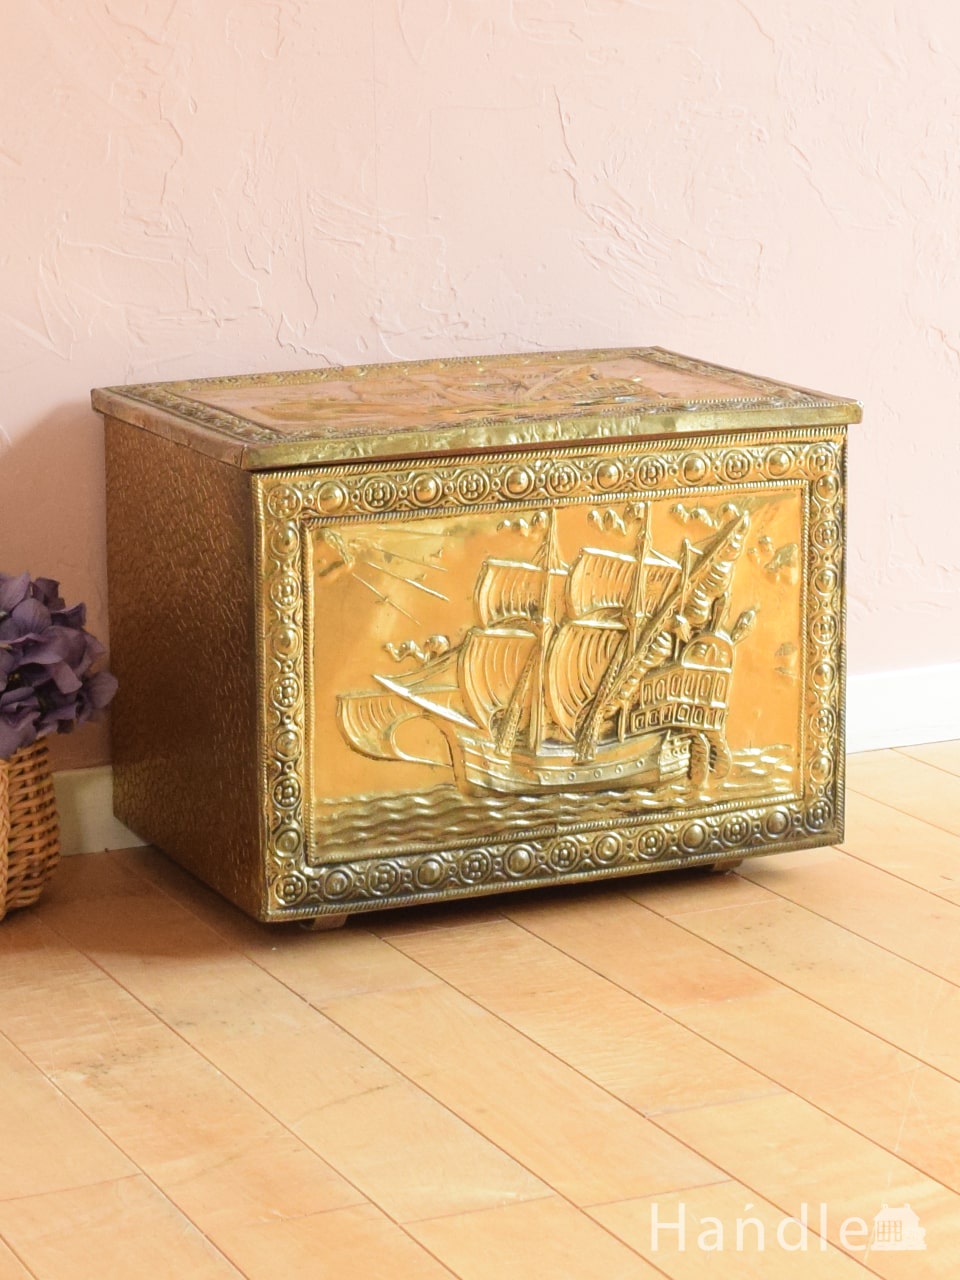 アンティークの真鍮の箱、イギリスで見つけた帆船の模様のブラスボックス (m-4596-z)